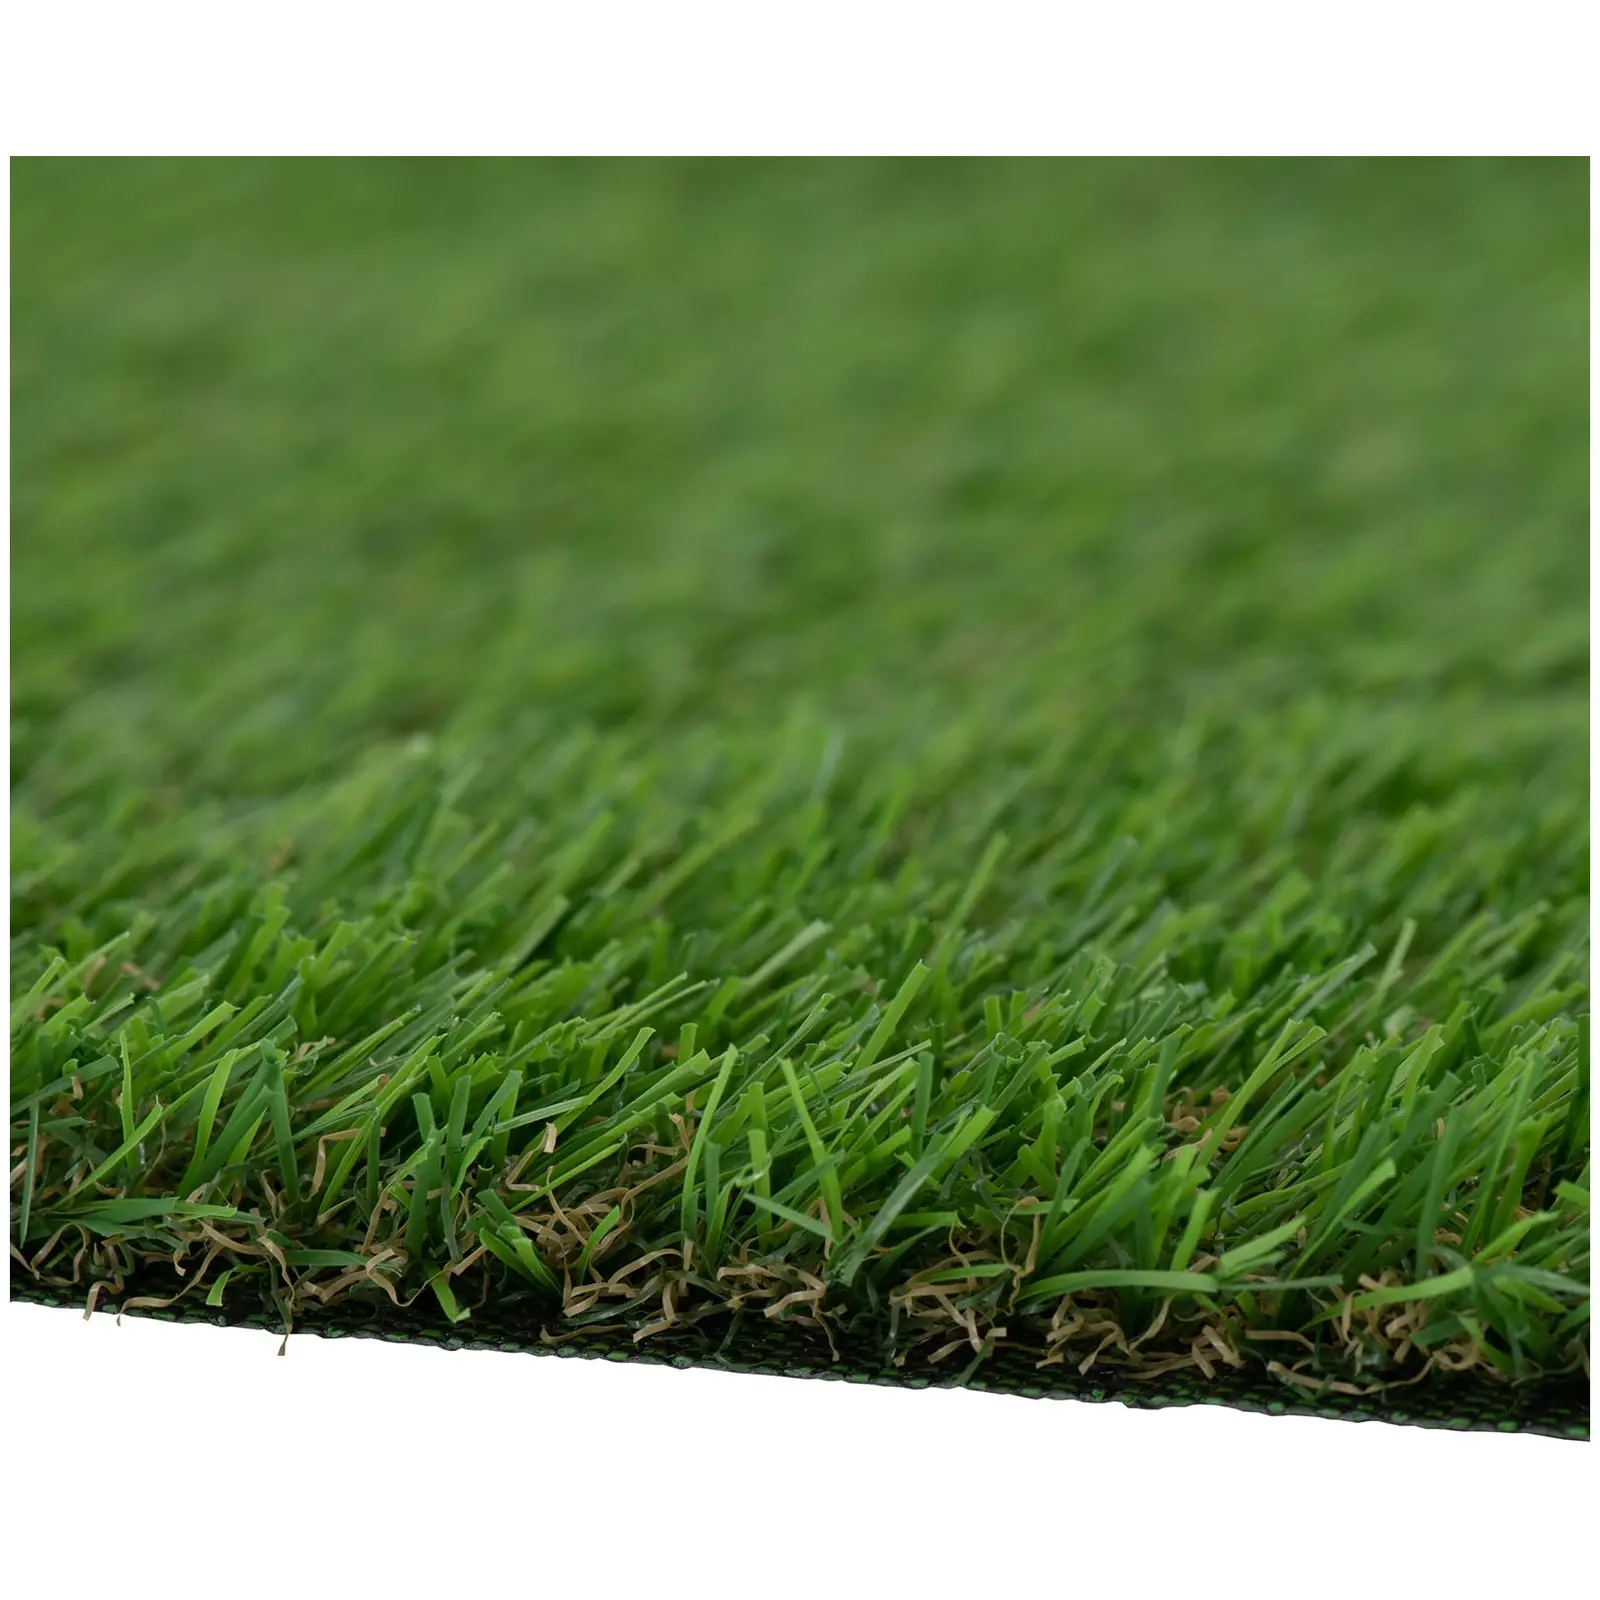 Umelá tráva - sada 5 - 100 x 100 cm - výška: 20 mm - rýchlosť stehu: 13/10 cm - odolná voči UV žiareniu